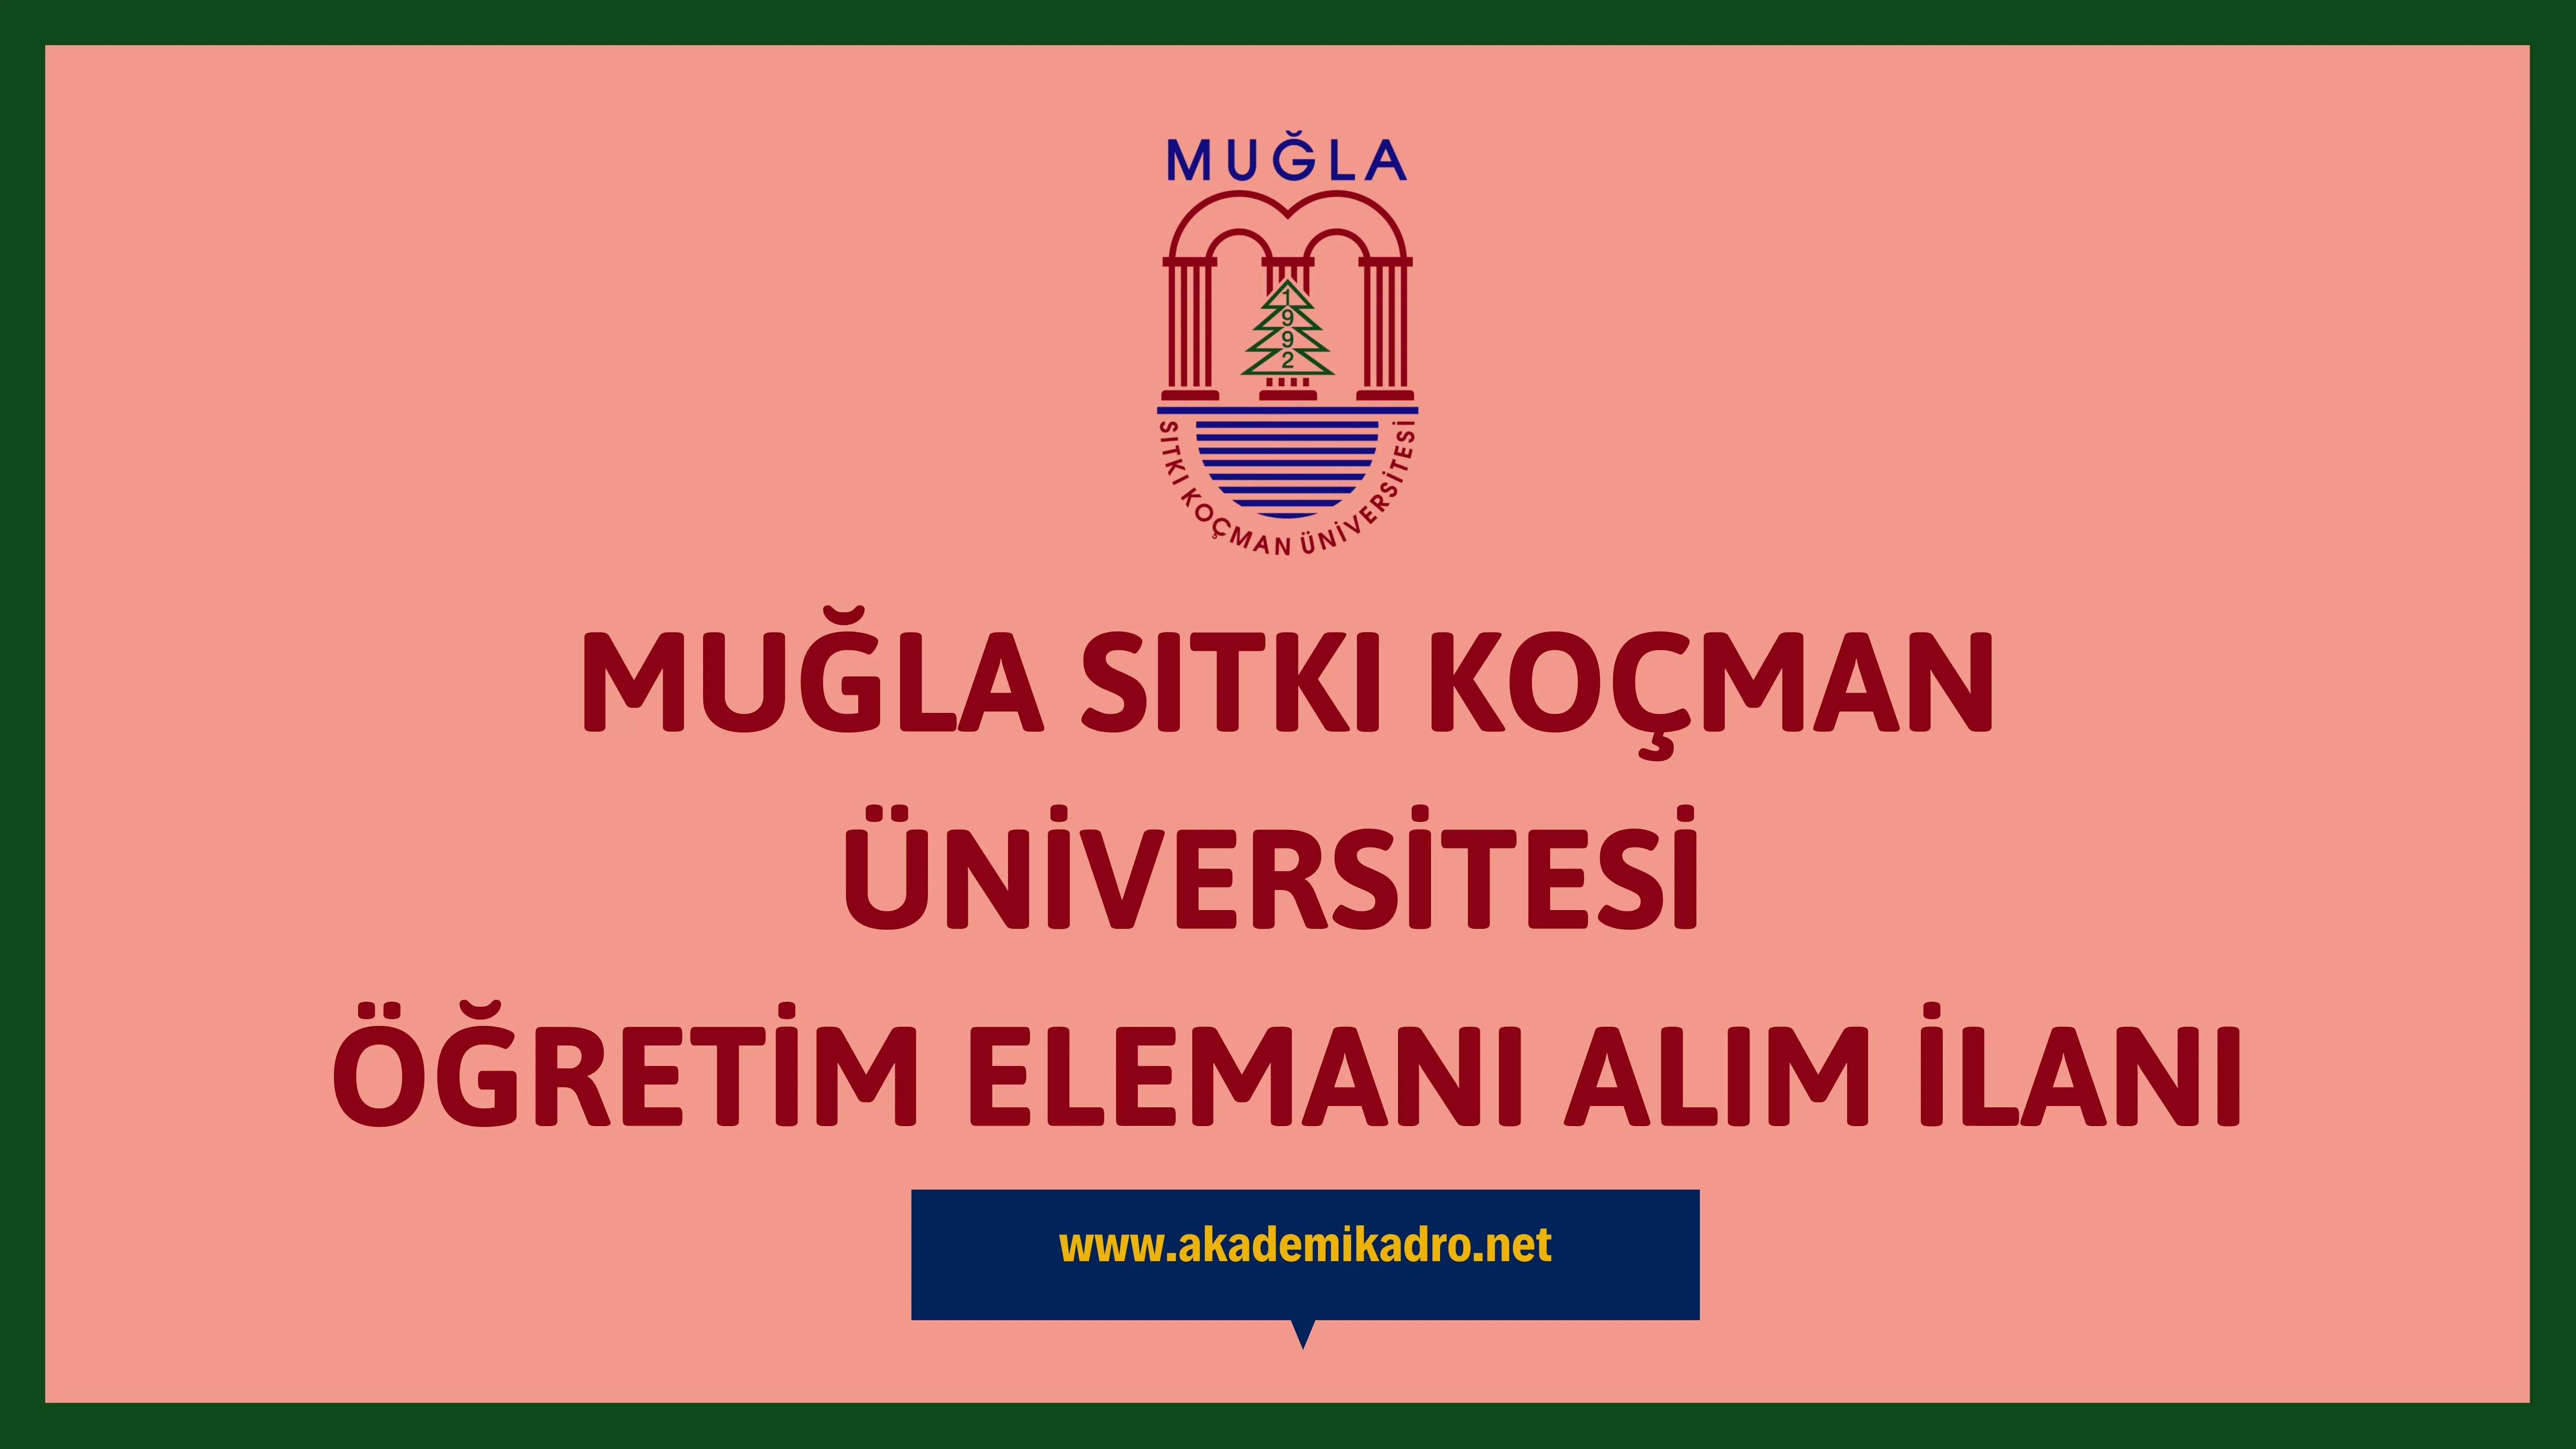 Muğla Sıtkı Koçman Üniversitesi 4 Öğretim görevlisi ve 5 Araştırma görevlisi alacaktır. Son başvuru tarihi 06 Kasım 2023